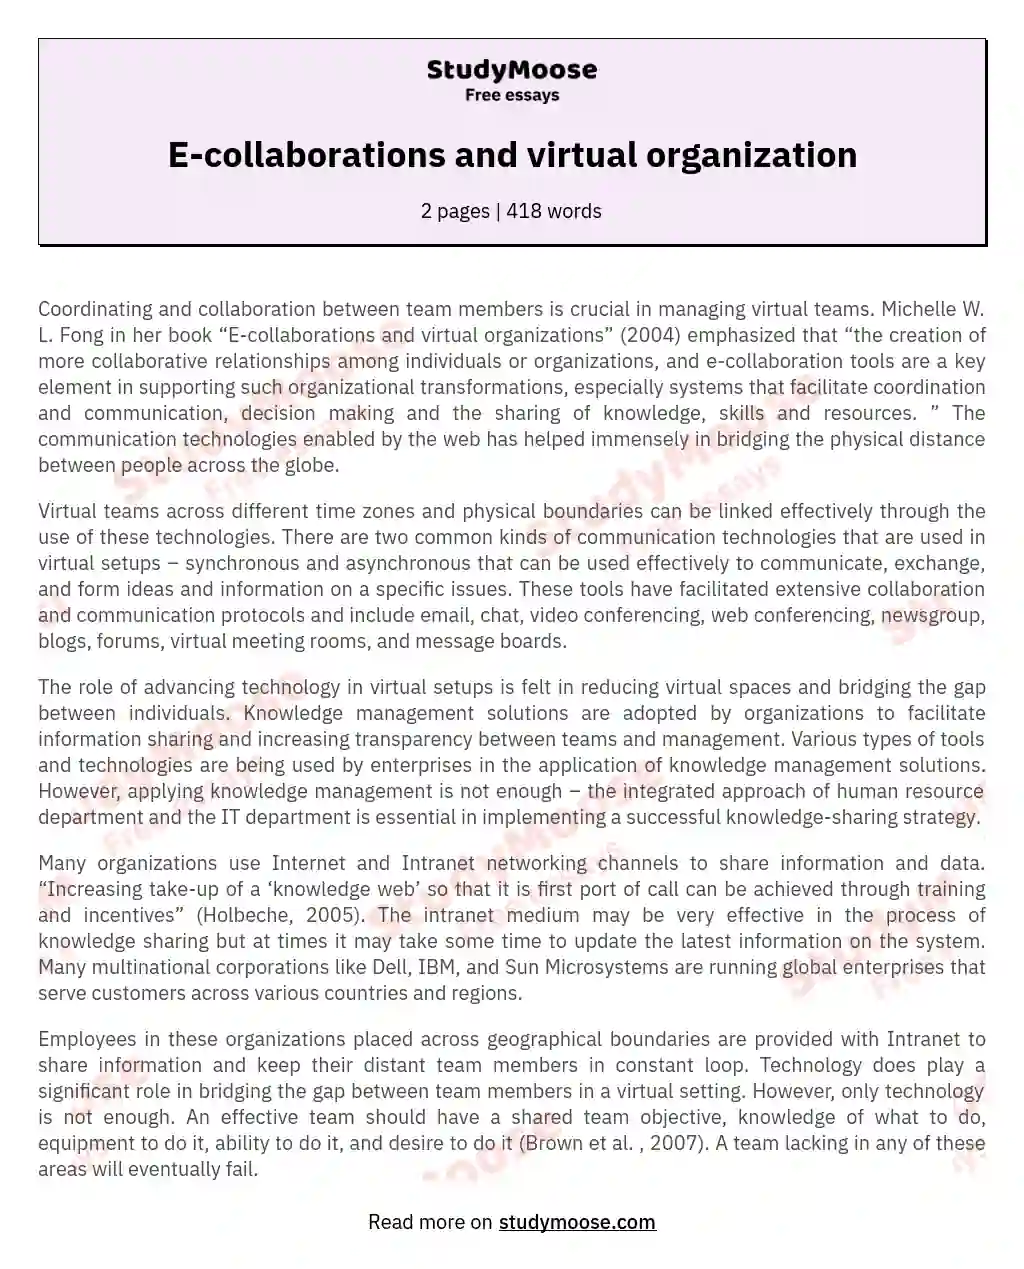 E-collaborations and virtual organization essay